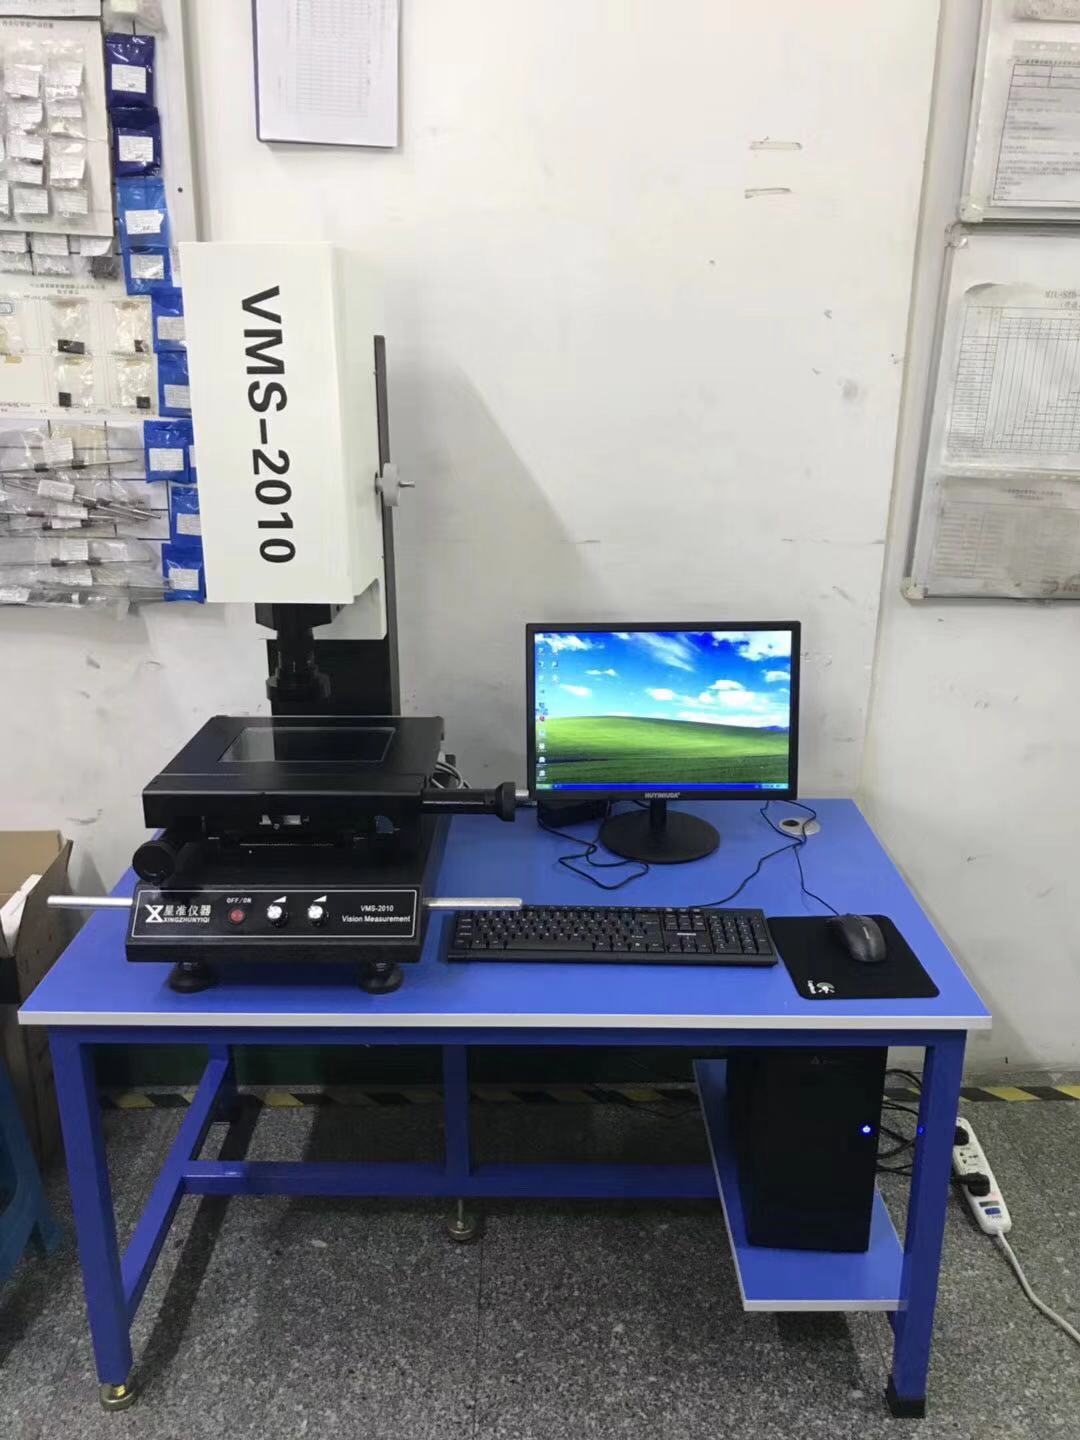 【星准仪器】厂家直销VMS3020二次元影像测量仪 免费送货上门安装培训4